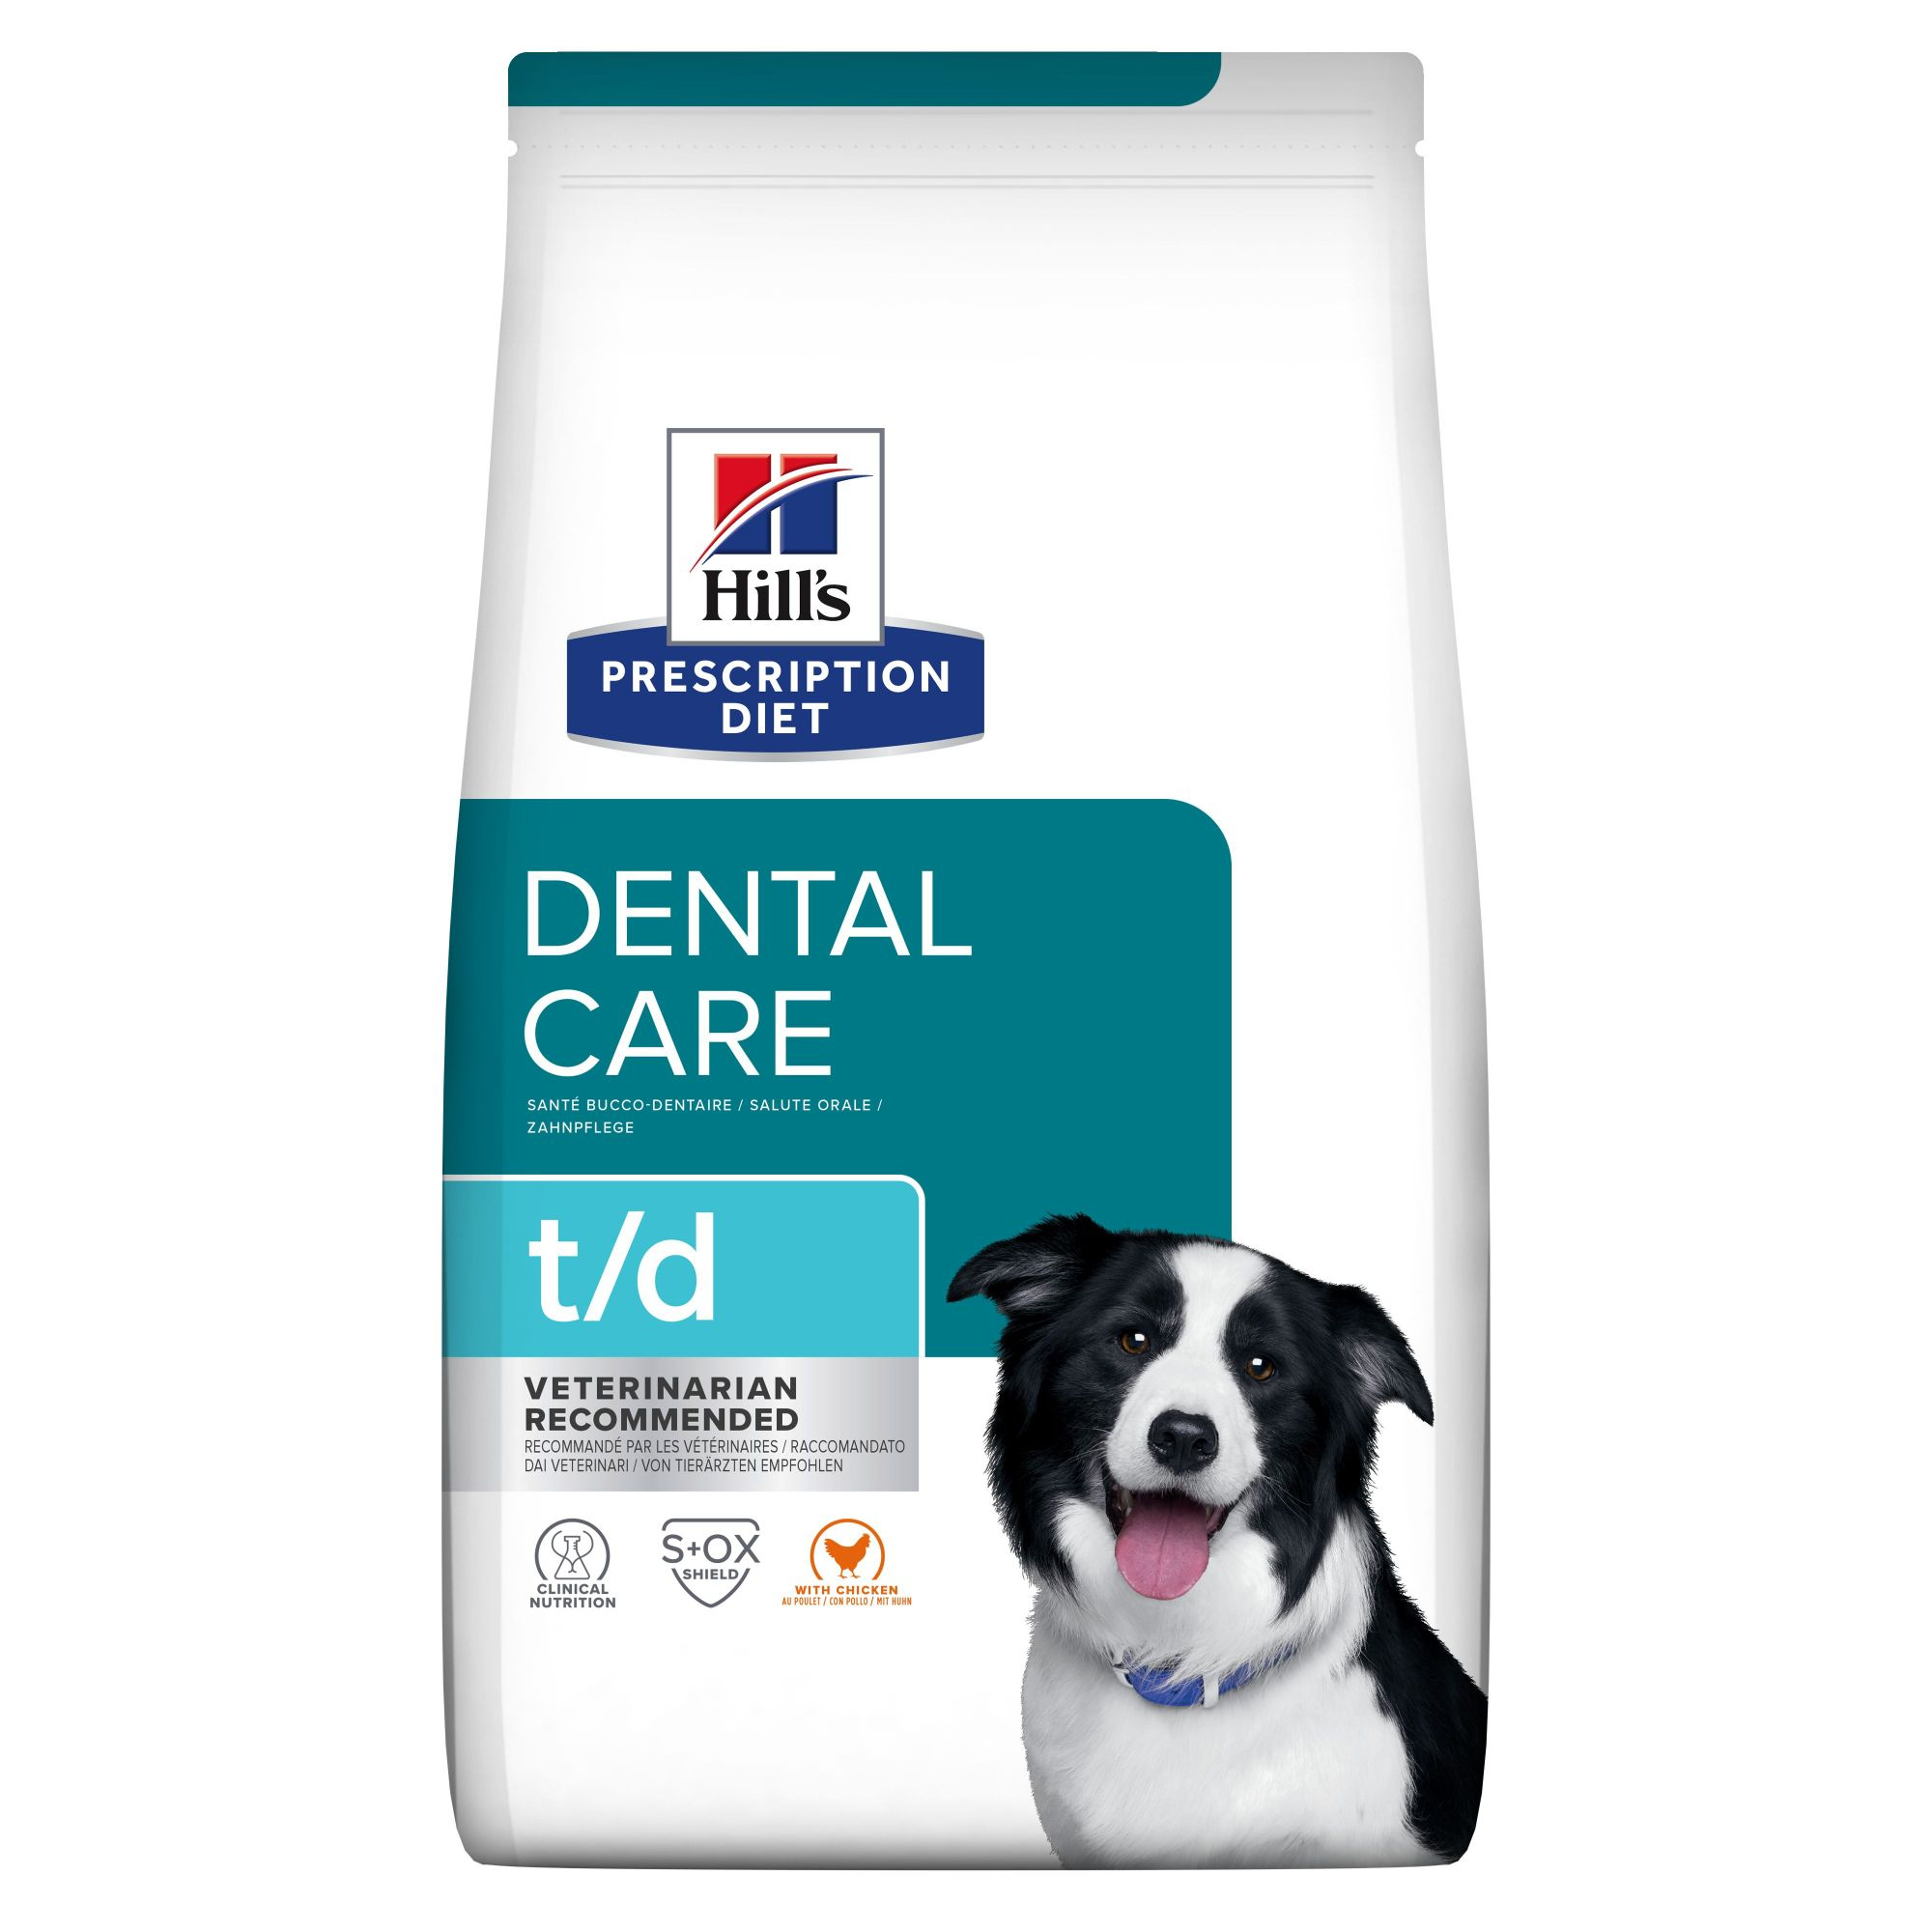 HILL'S Prescription Diet T/D Dental Care croquettes pour chien Adulte